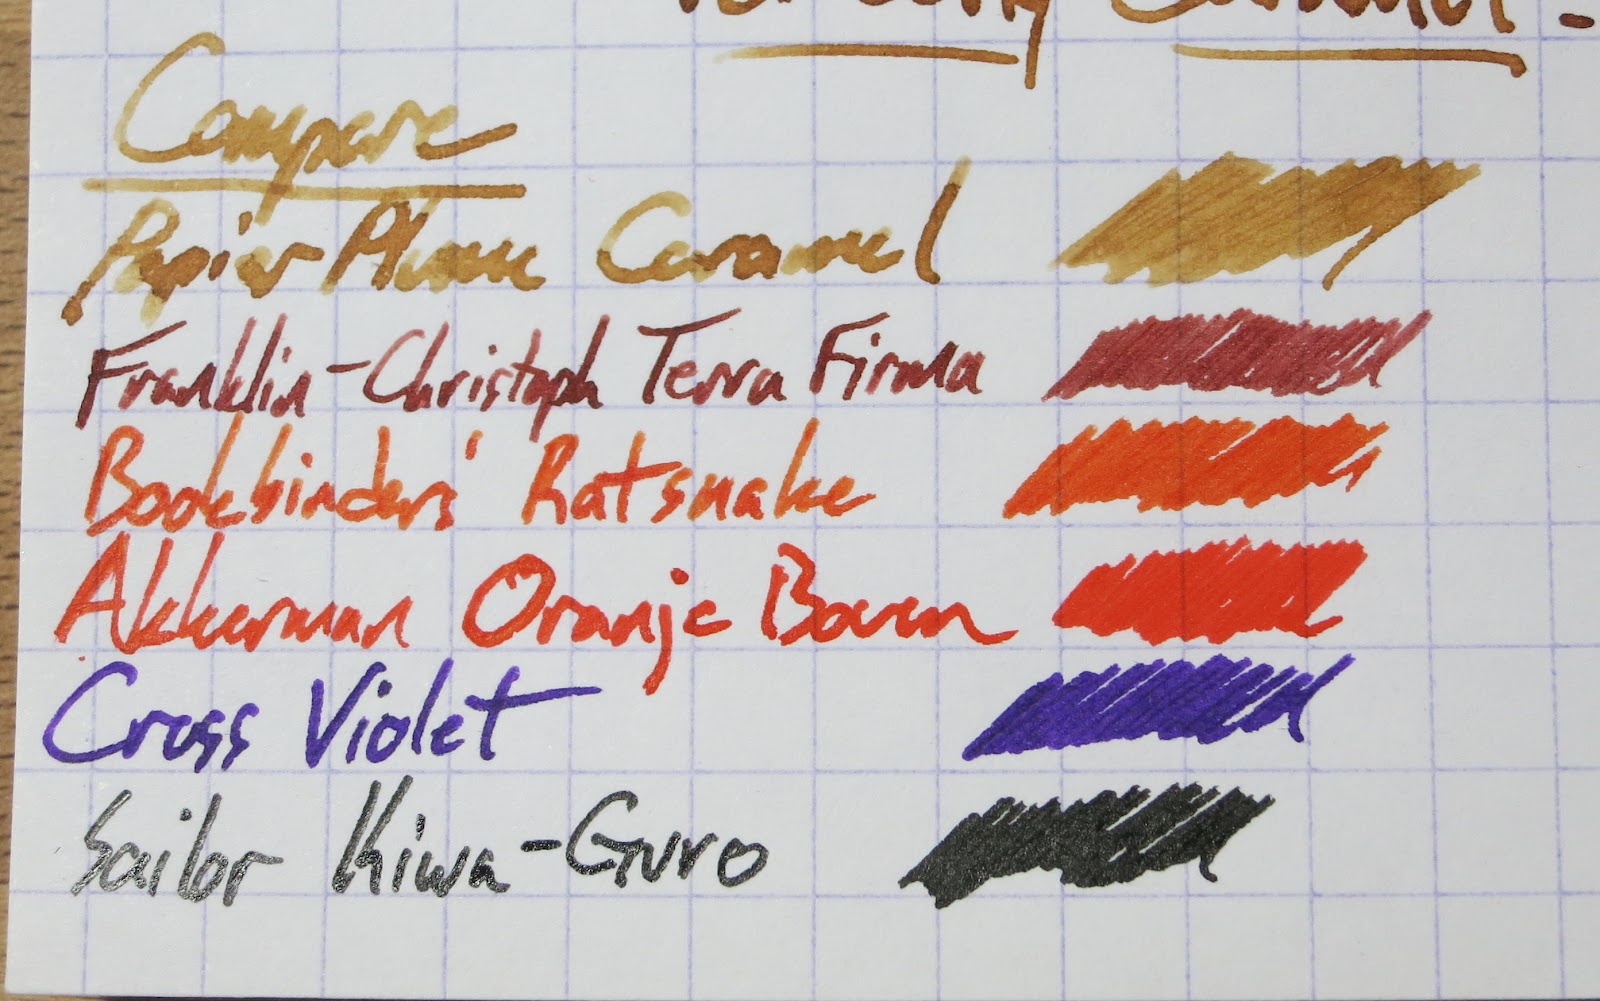 Noodler's Golden Brown - Ink Sample